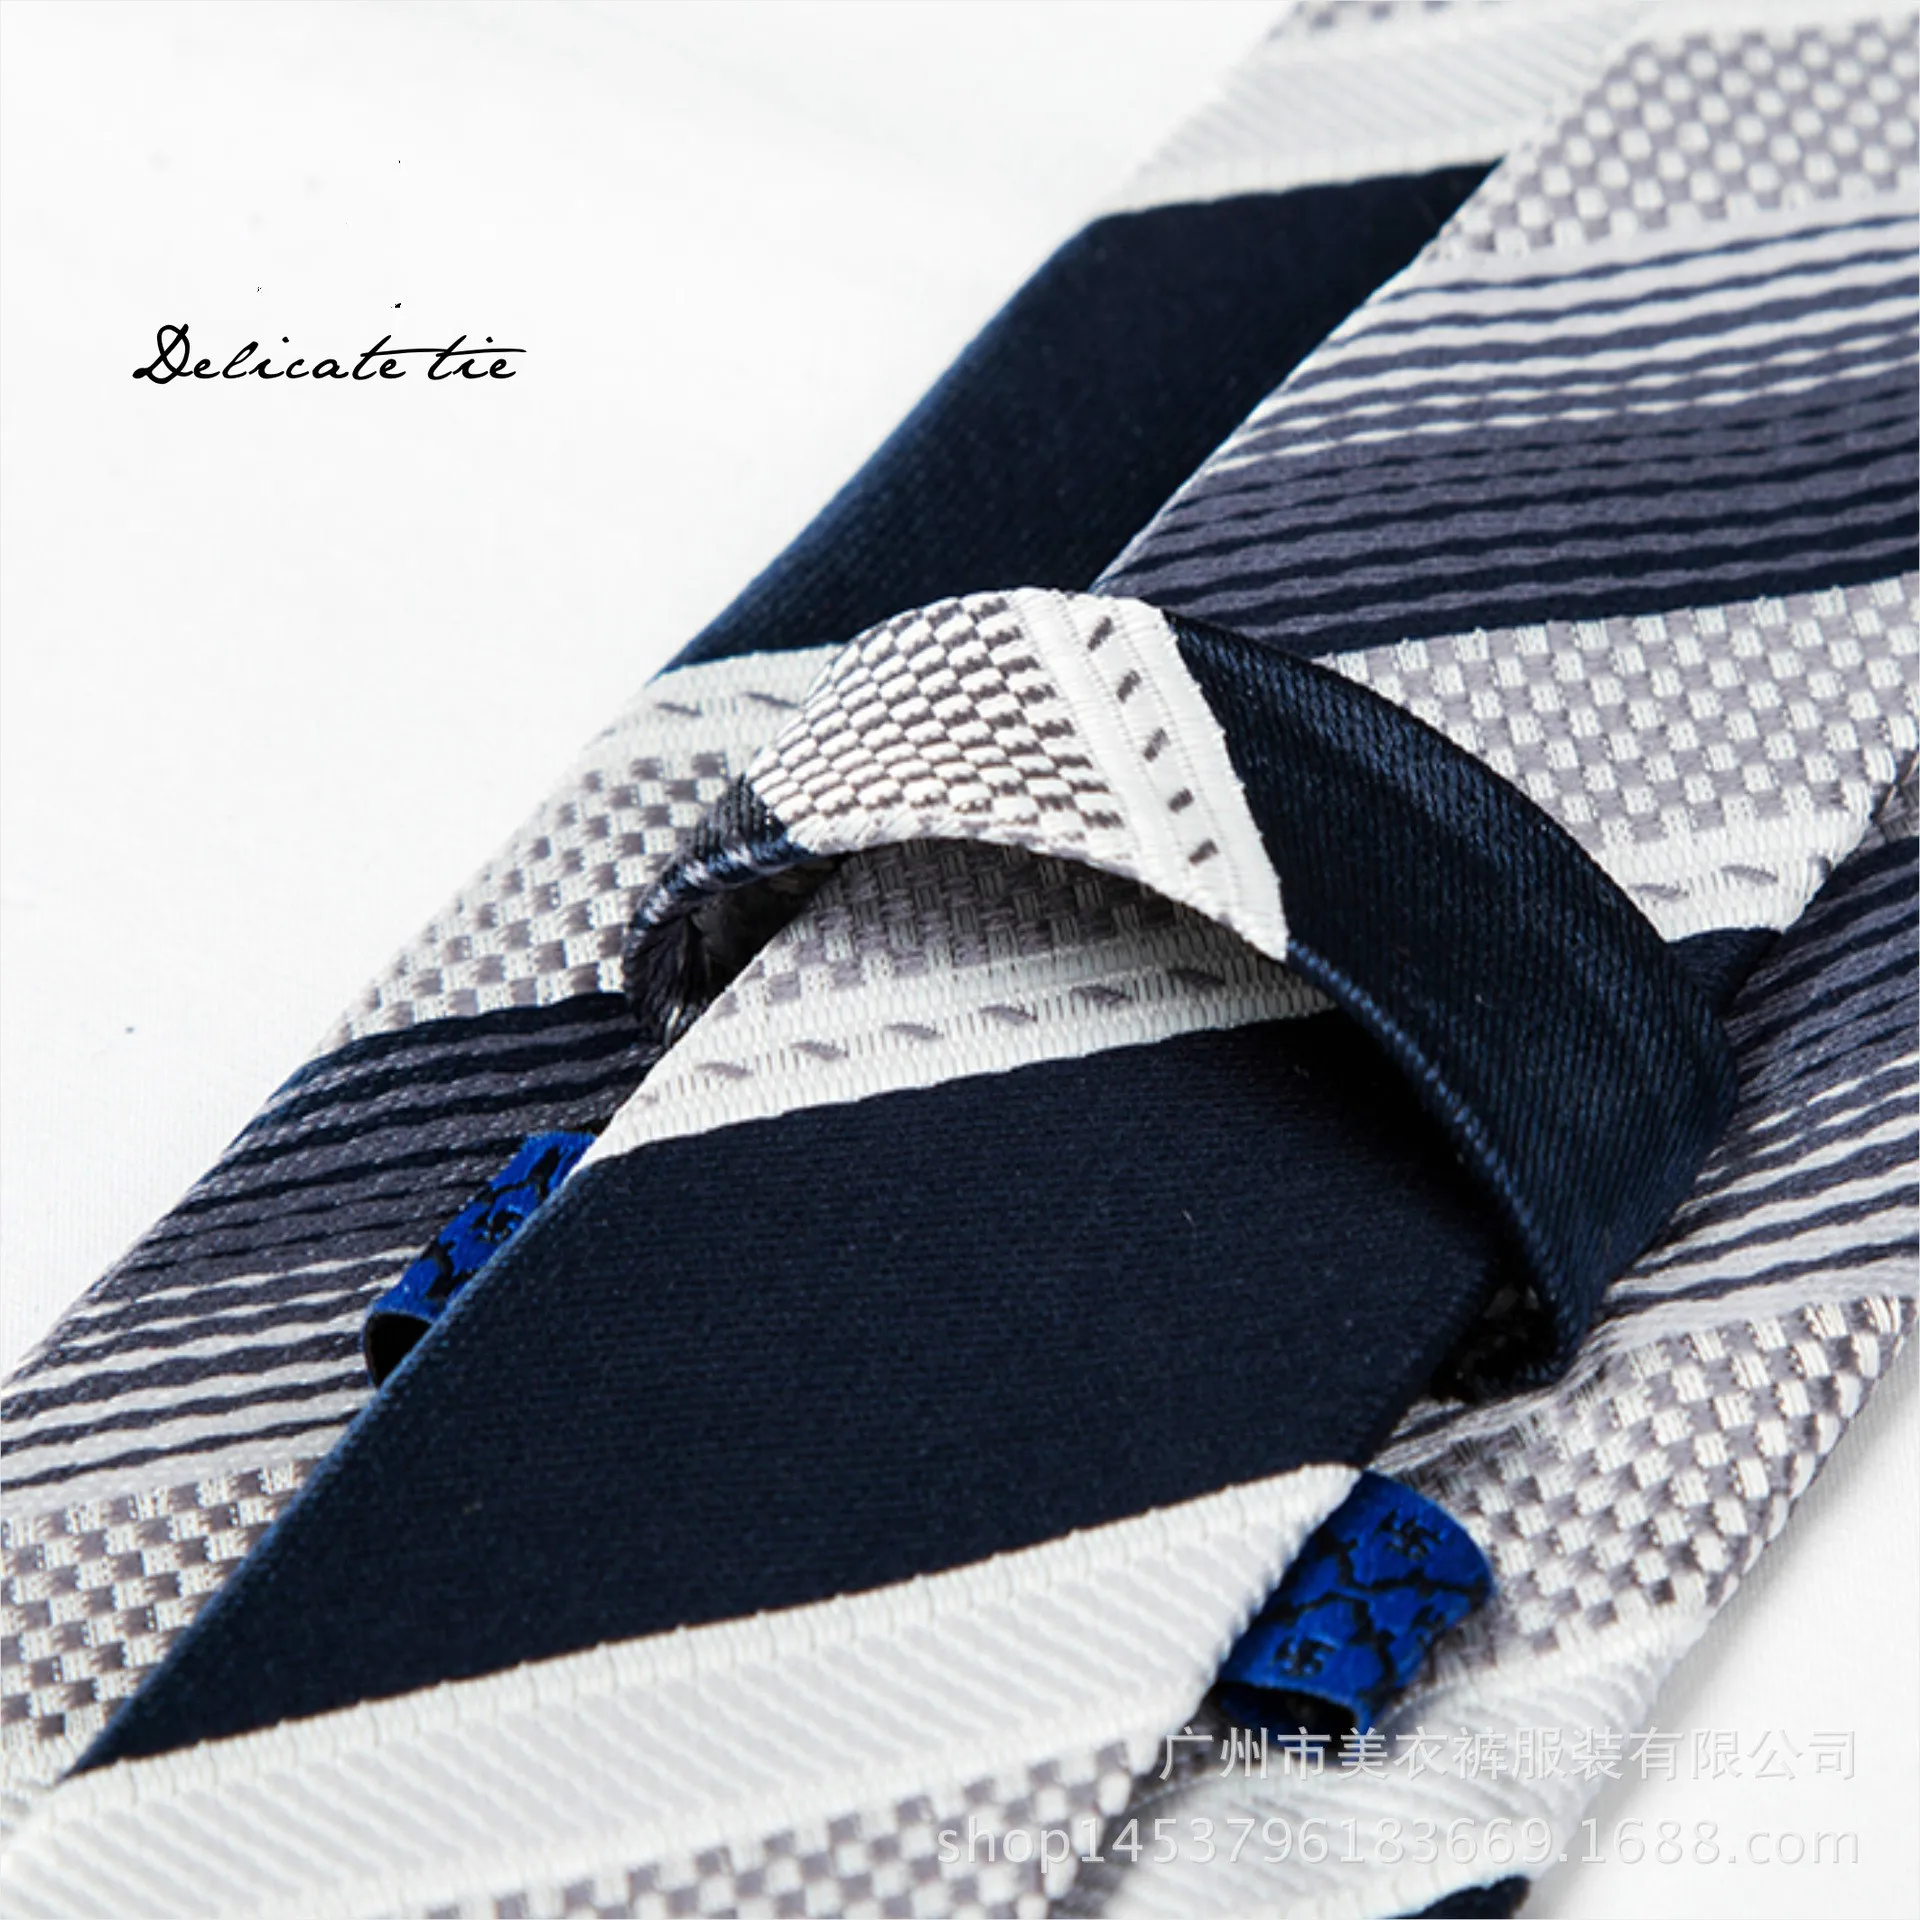 Новая мода галстук элегантный джентльмен Галстуки Комплект Одежда для свадьбы, дня рождения Галстуки набор шелка в полоску Gravata тонкий